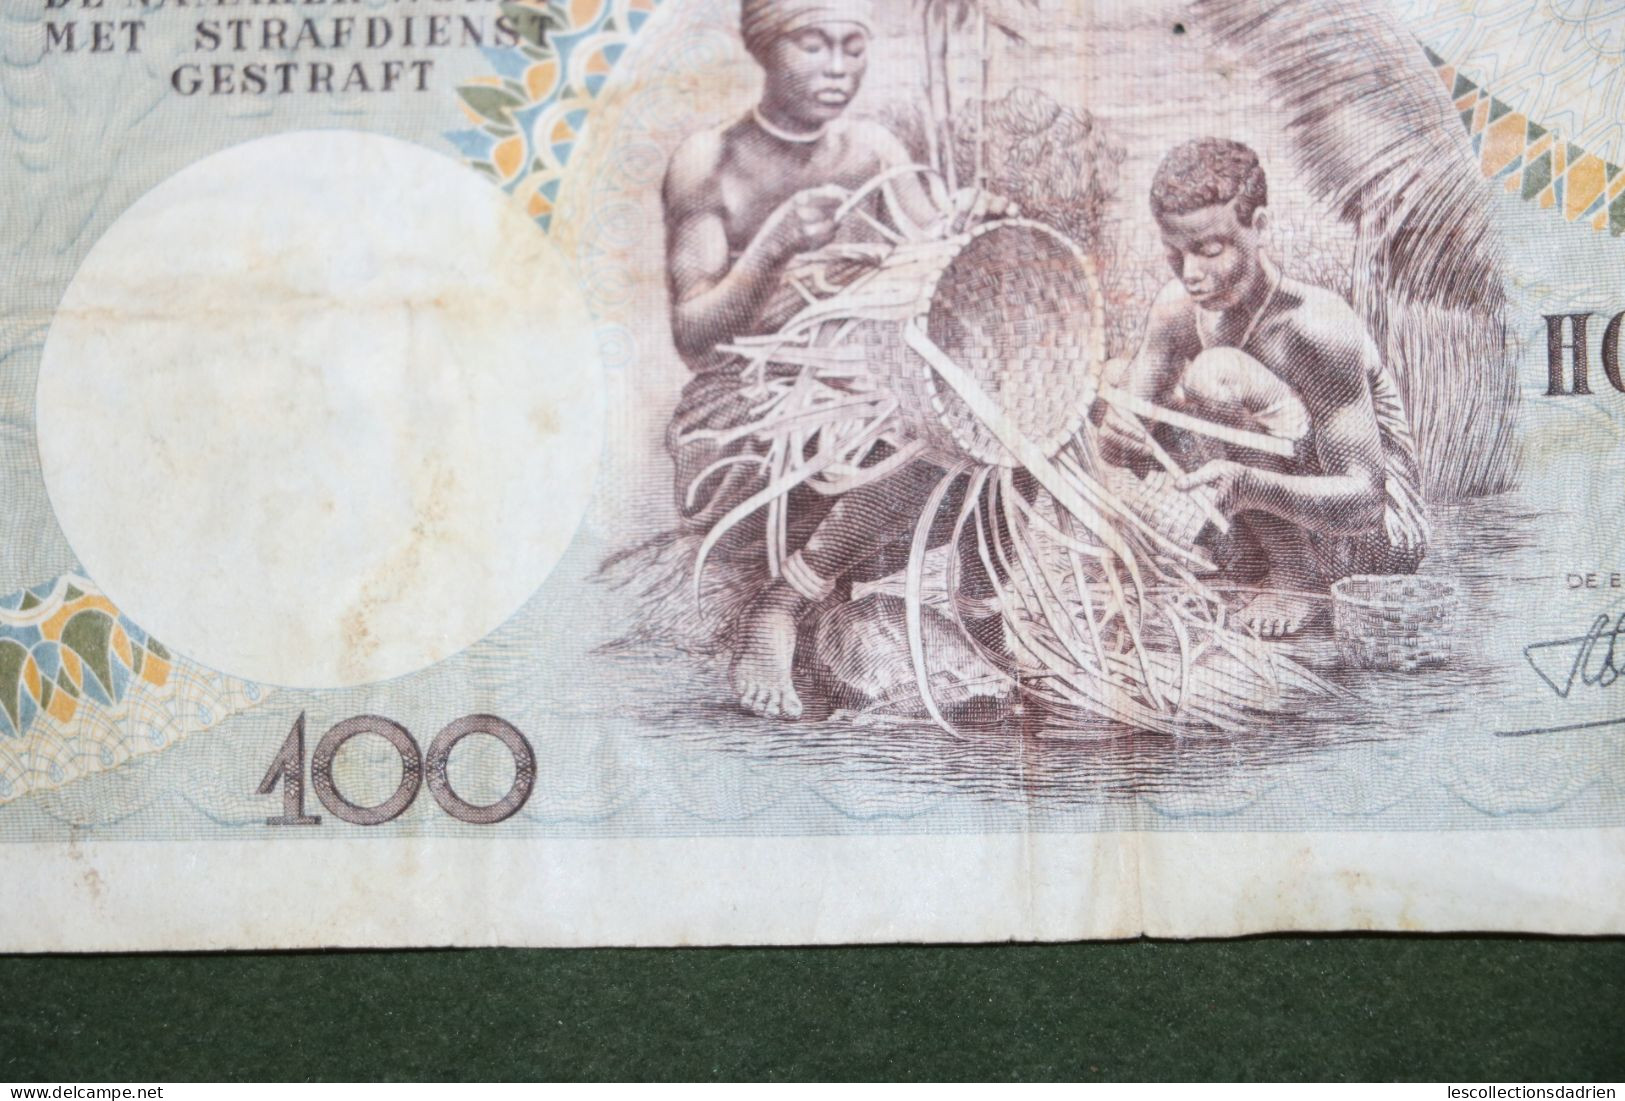 Billet de 100 francs Congo belge - 100 frank belgische Congo - Ruanda Urundi  1955 - banknote